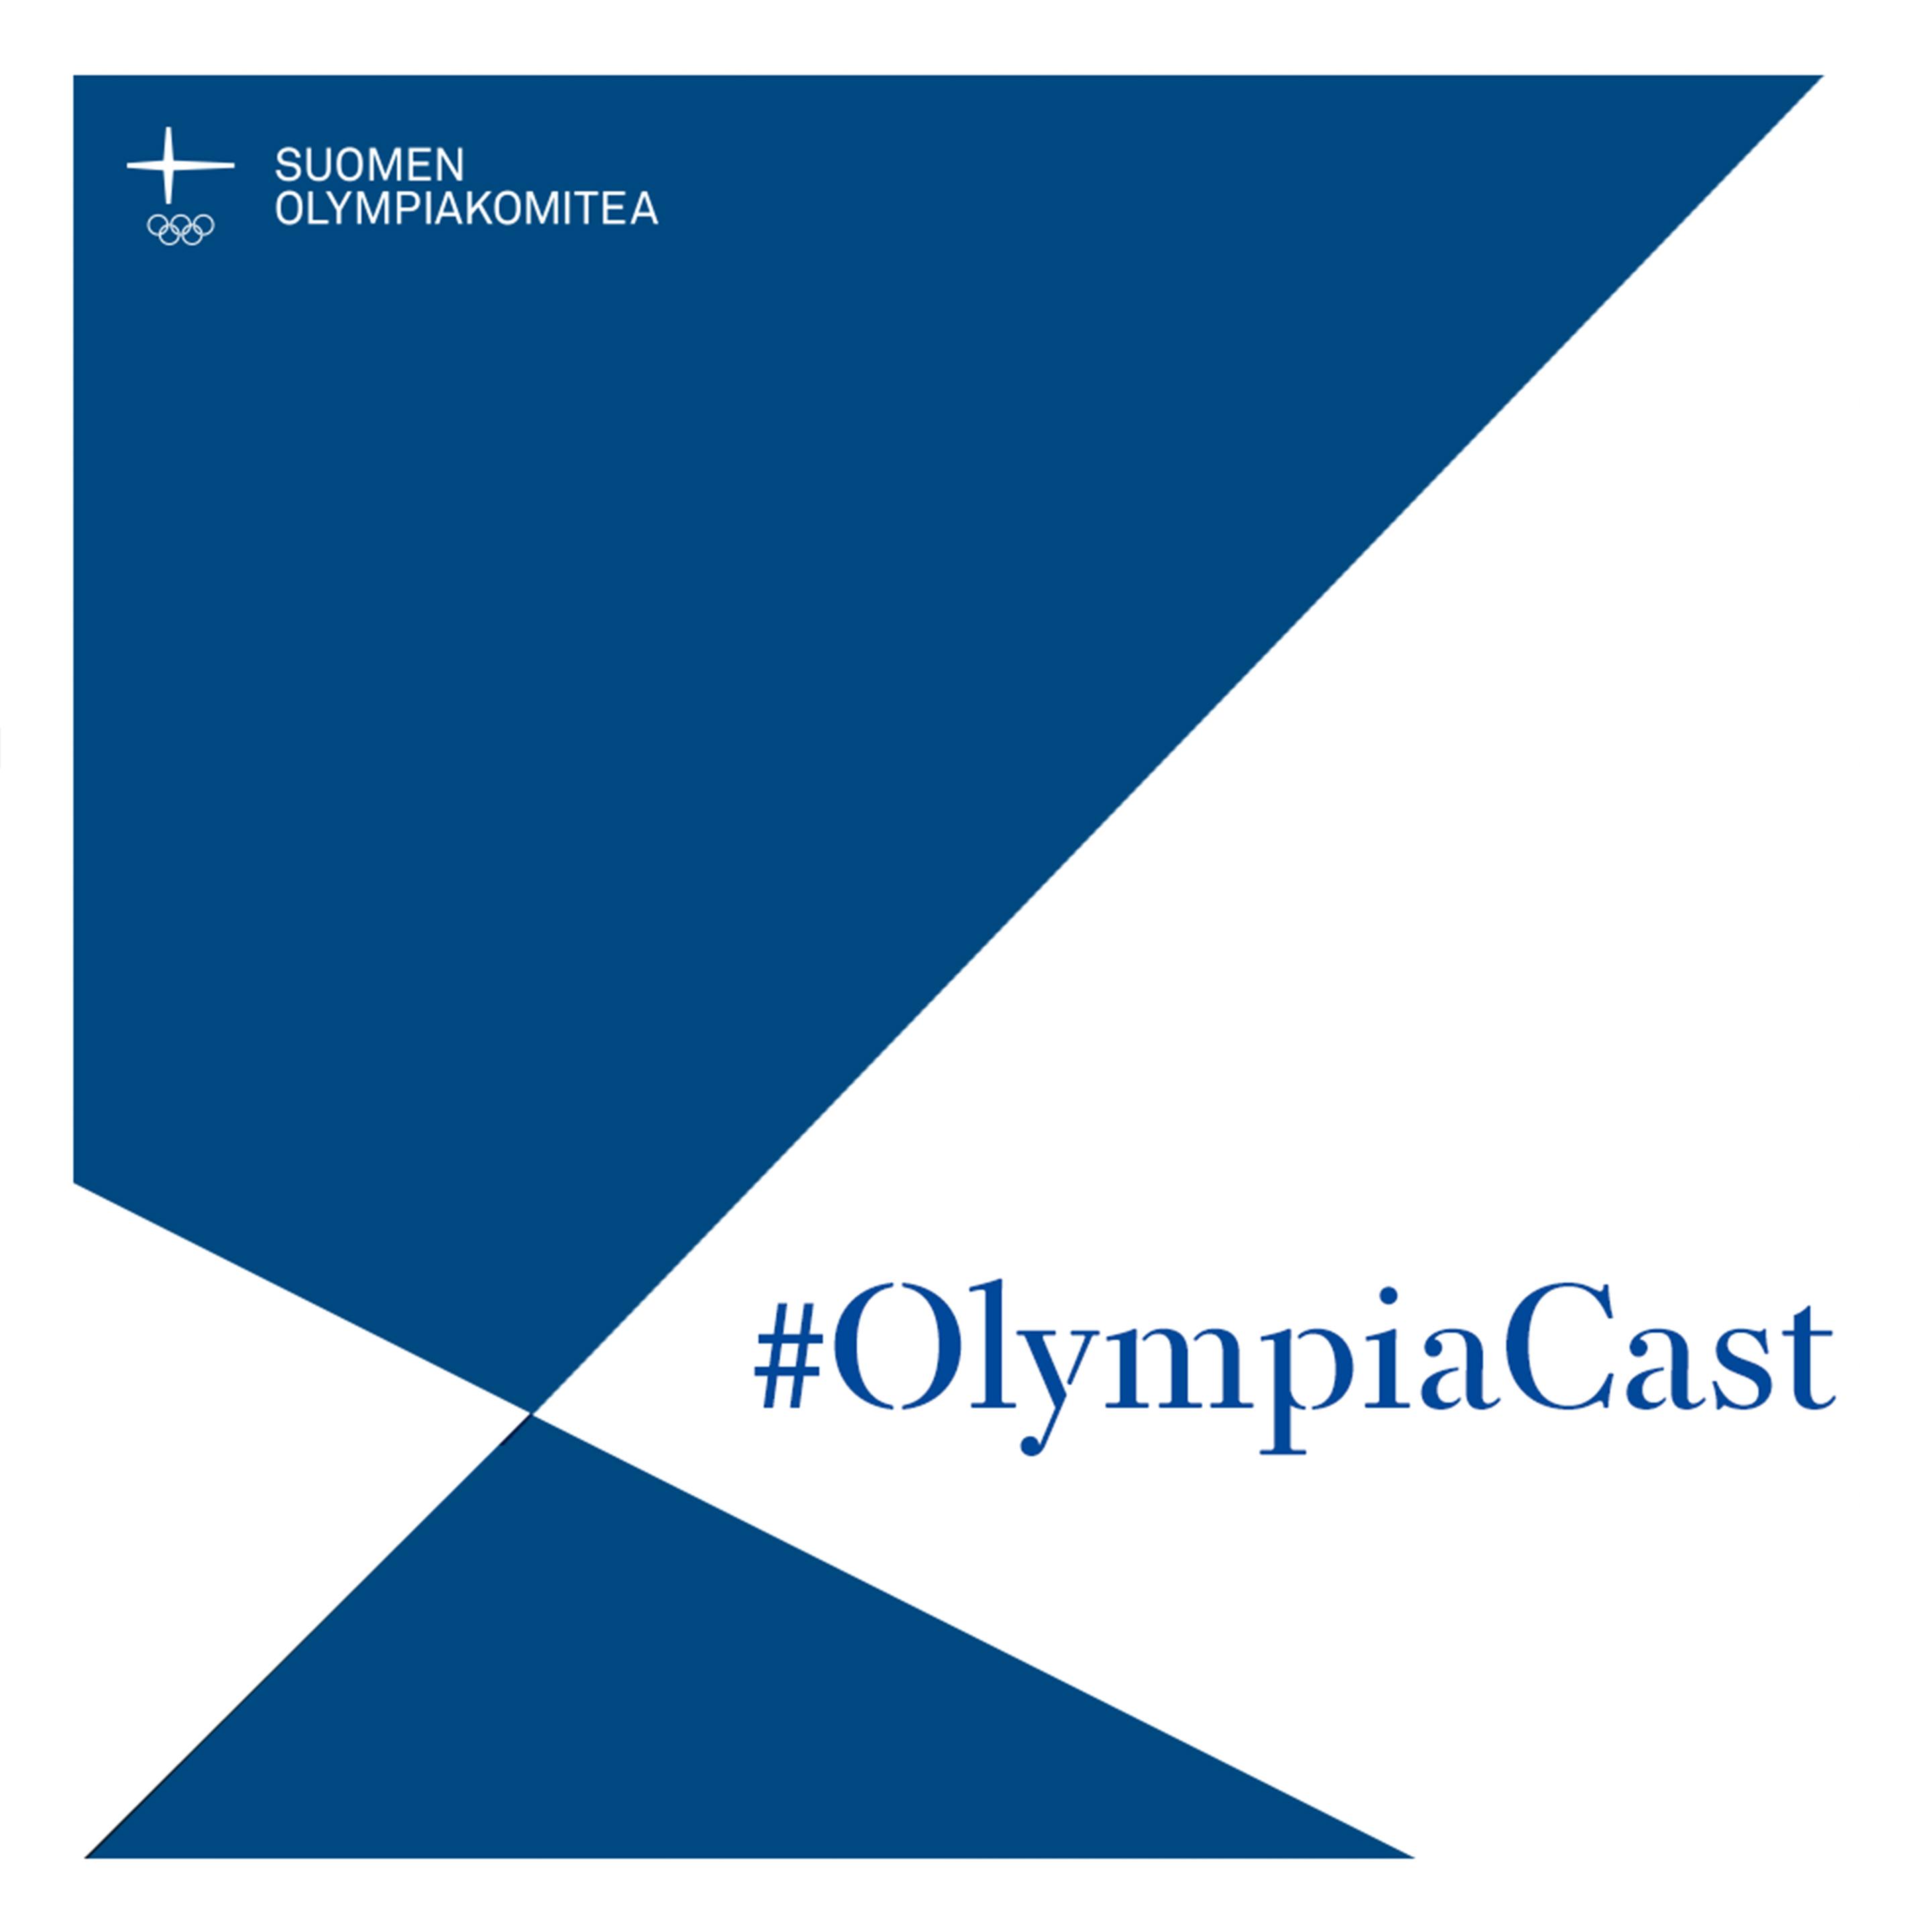 OlympiaCastin vieraana Amanda Kotaja – ilopilleri on odottanut Rion pettymyksen jälkeen Tokion paralympialaisia kauan